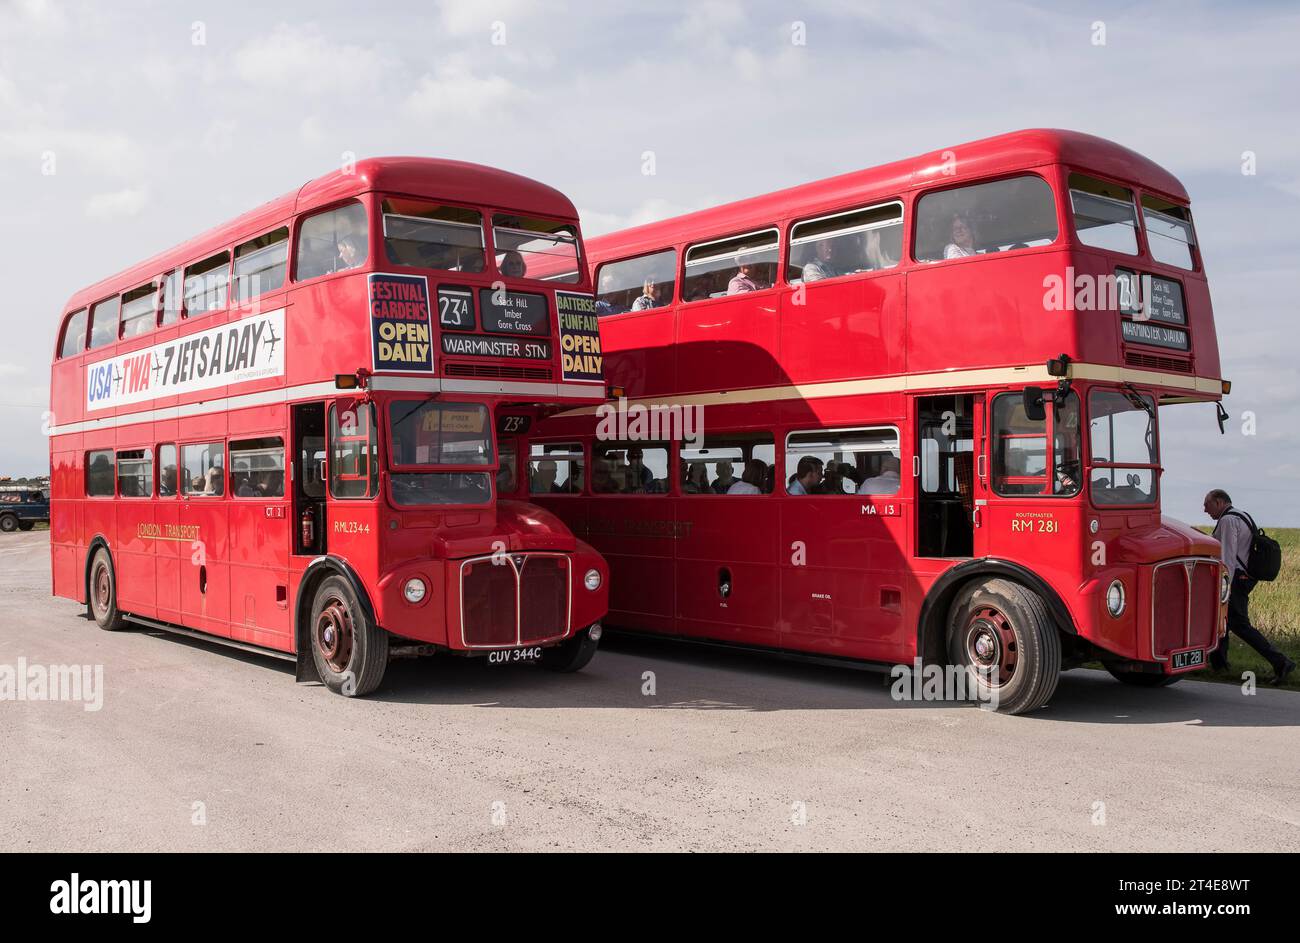 Imberbus, Londres transport routemaster bus Warminster à Imber et au-delà de 2017 jours ouvrables Wiltshire UK royaume-uni angleterre Banque D'Images